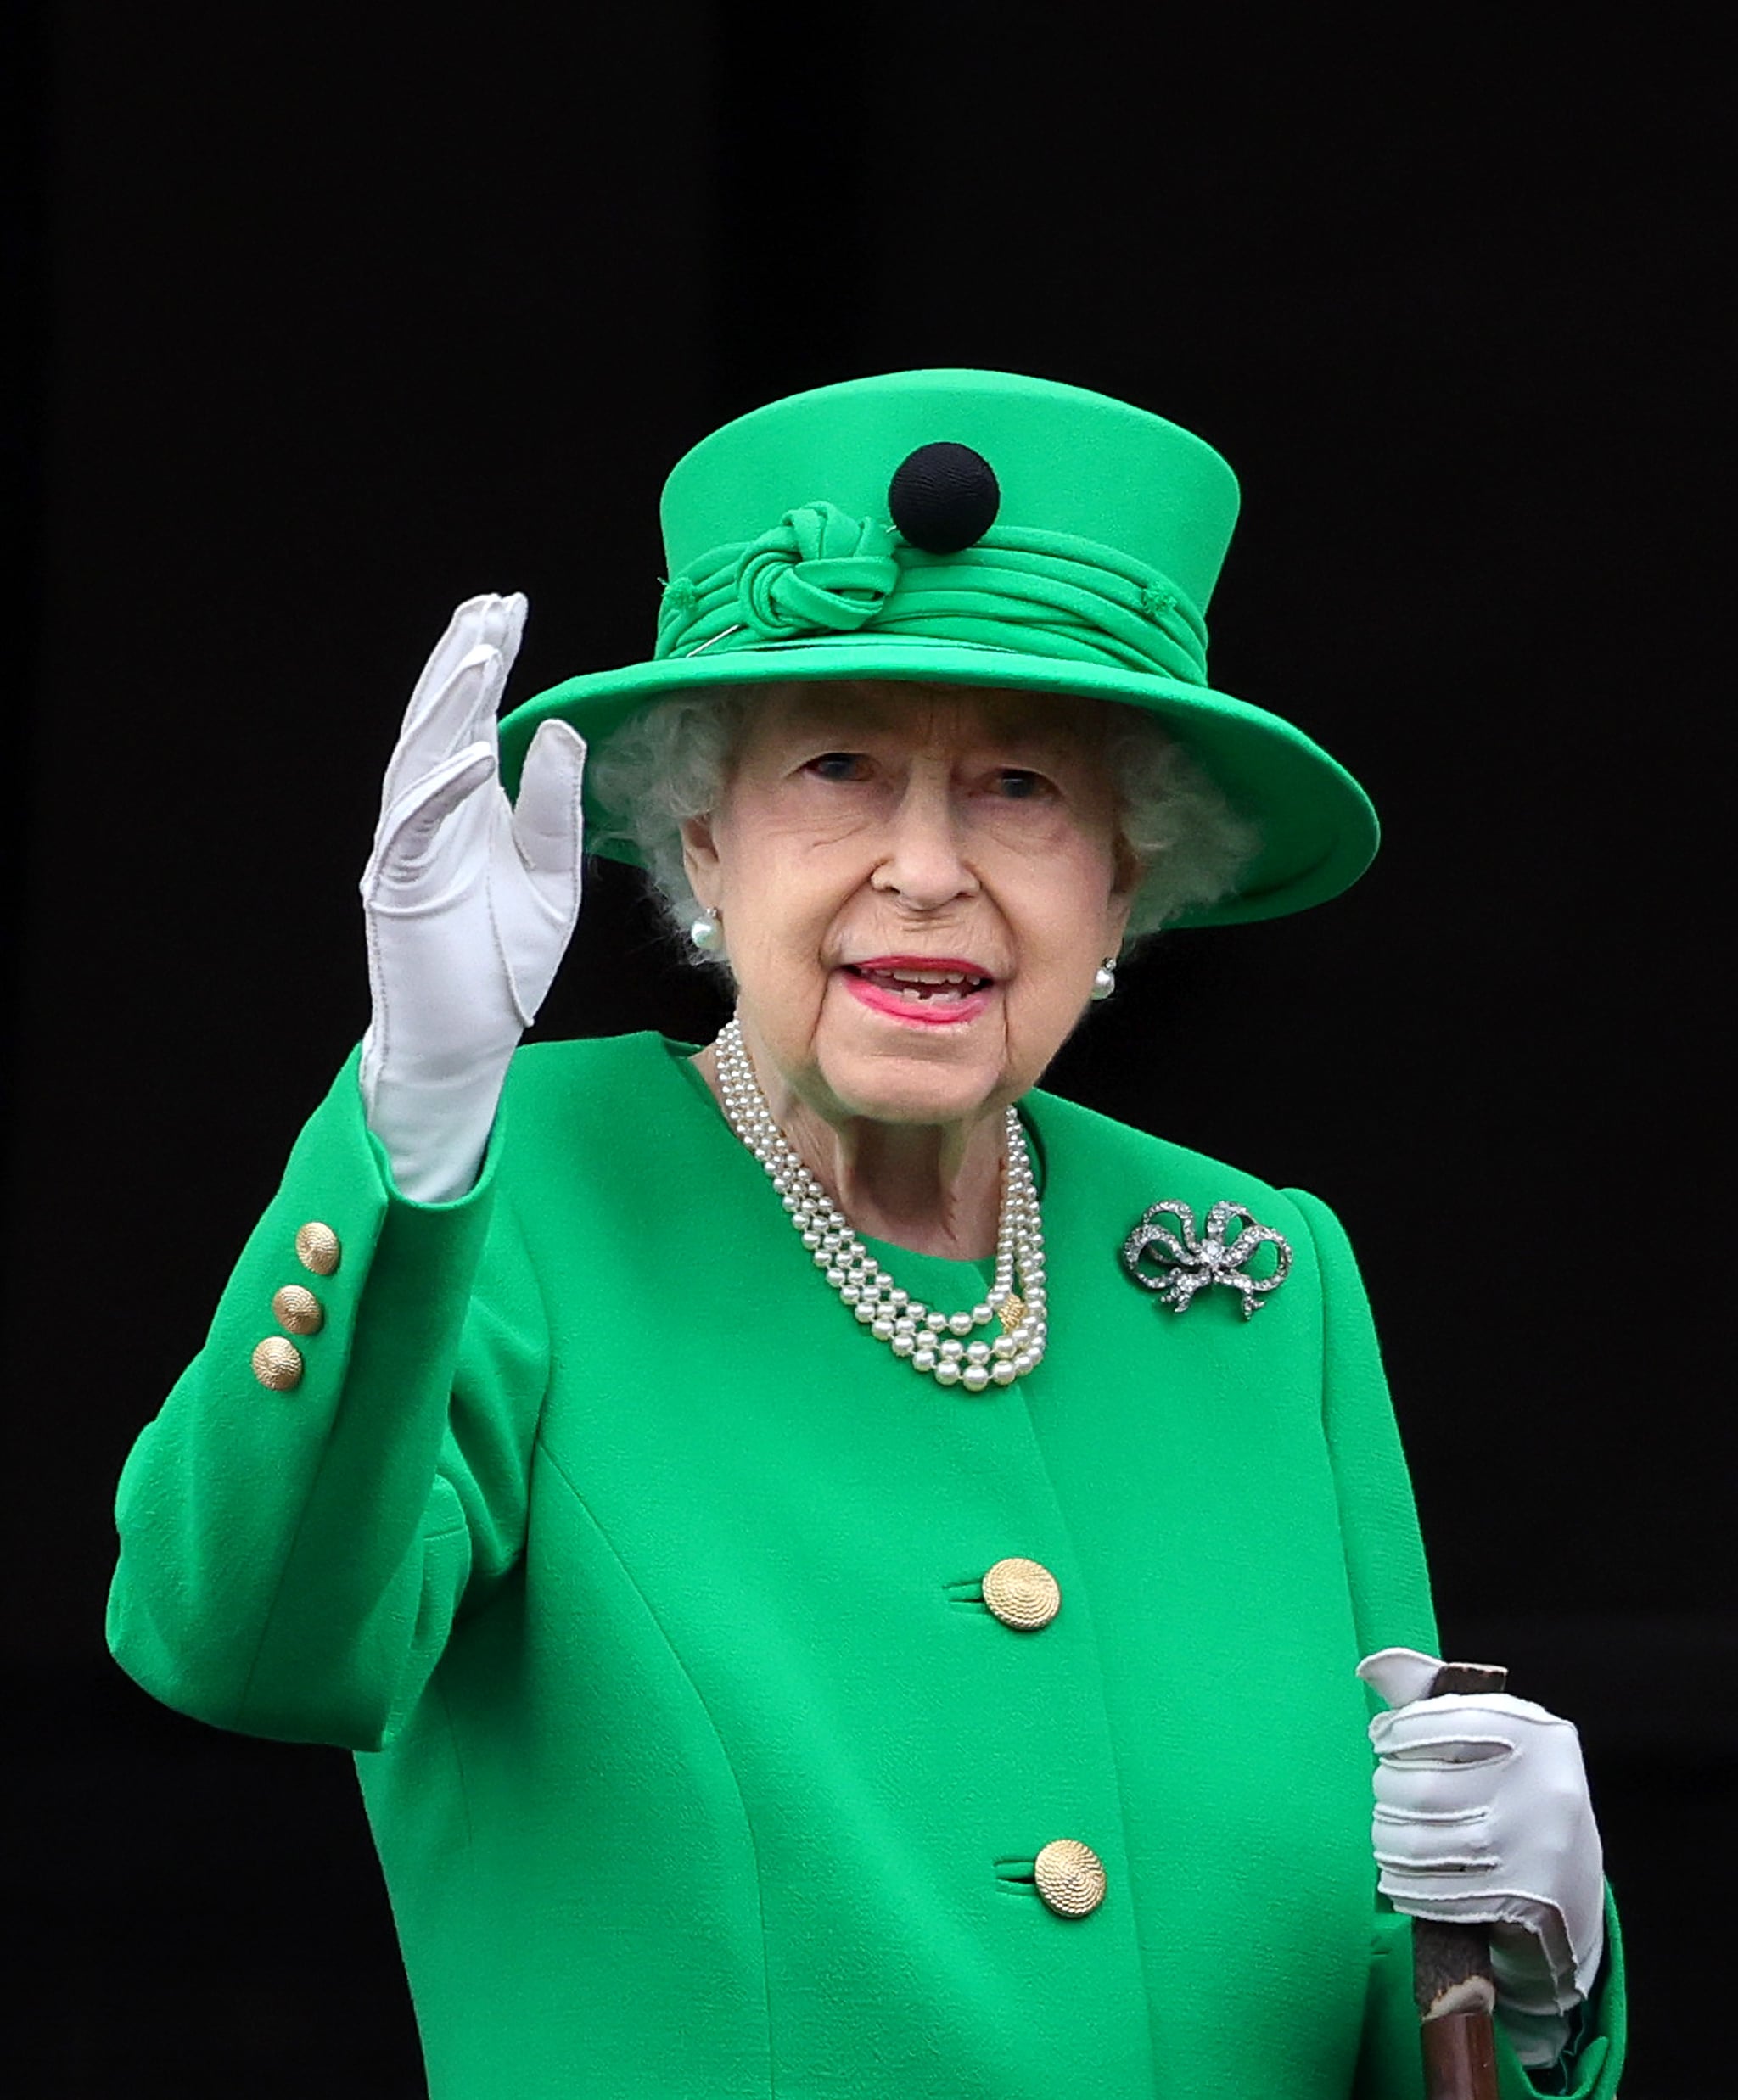 LONDRES, ANGLETERRE – 05 JUIN: La reine Elizabeth II salue du balcon du palais de Buckingham lors du concours du jubilé de platine le 05 juin 2022 à Londres, en Angleterre.  Le jubilé de platine d'Elizabeth II est célébré du 2 au 5 juin 2022 au Royaume-Uni et dans le Commonwealth pour marquer le 70e anniversaire de l'accession de la reine Elizabeth II le 6 février 1952. (Photo de Chris Jackson/Getty Images)